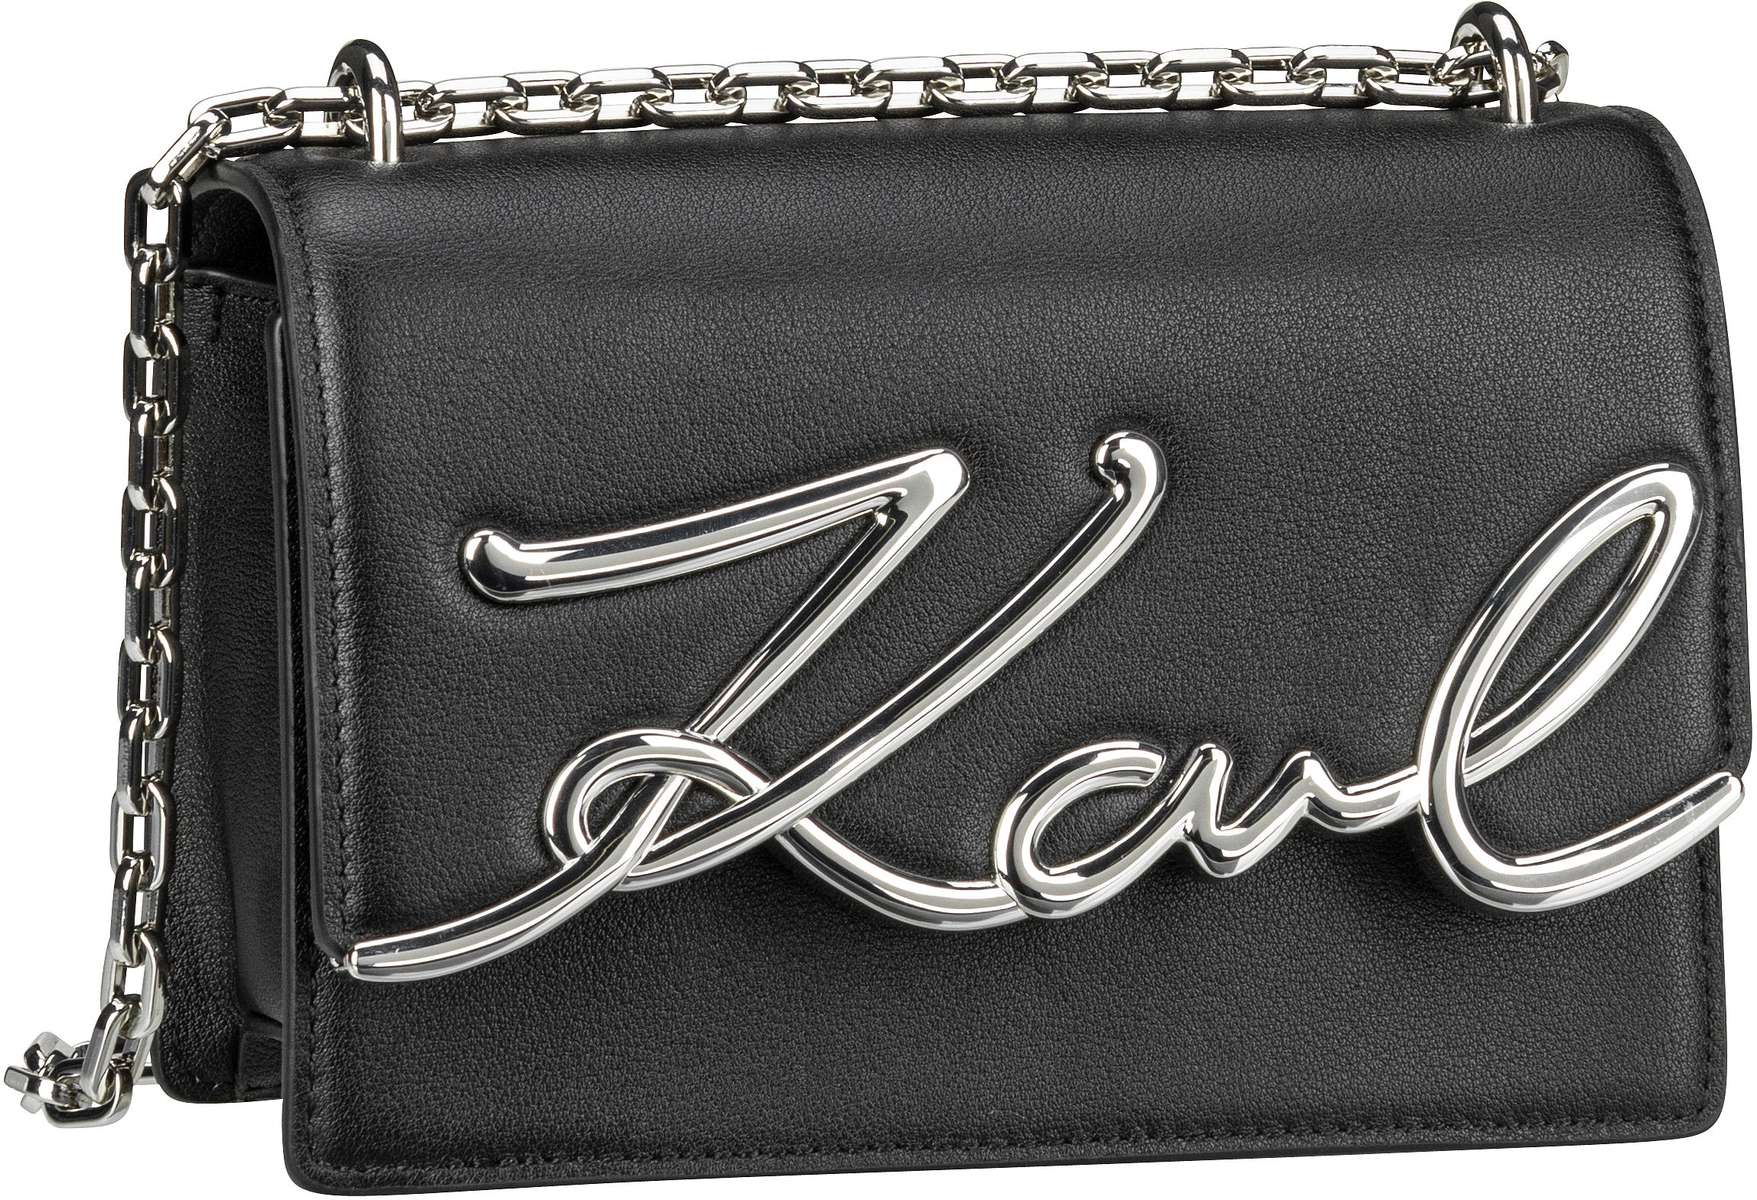 Karl Lagerfeld K/Signature SM Shoulderbag  in Black/Nickel (2.1 Liter), Umhängetasche